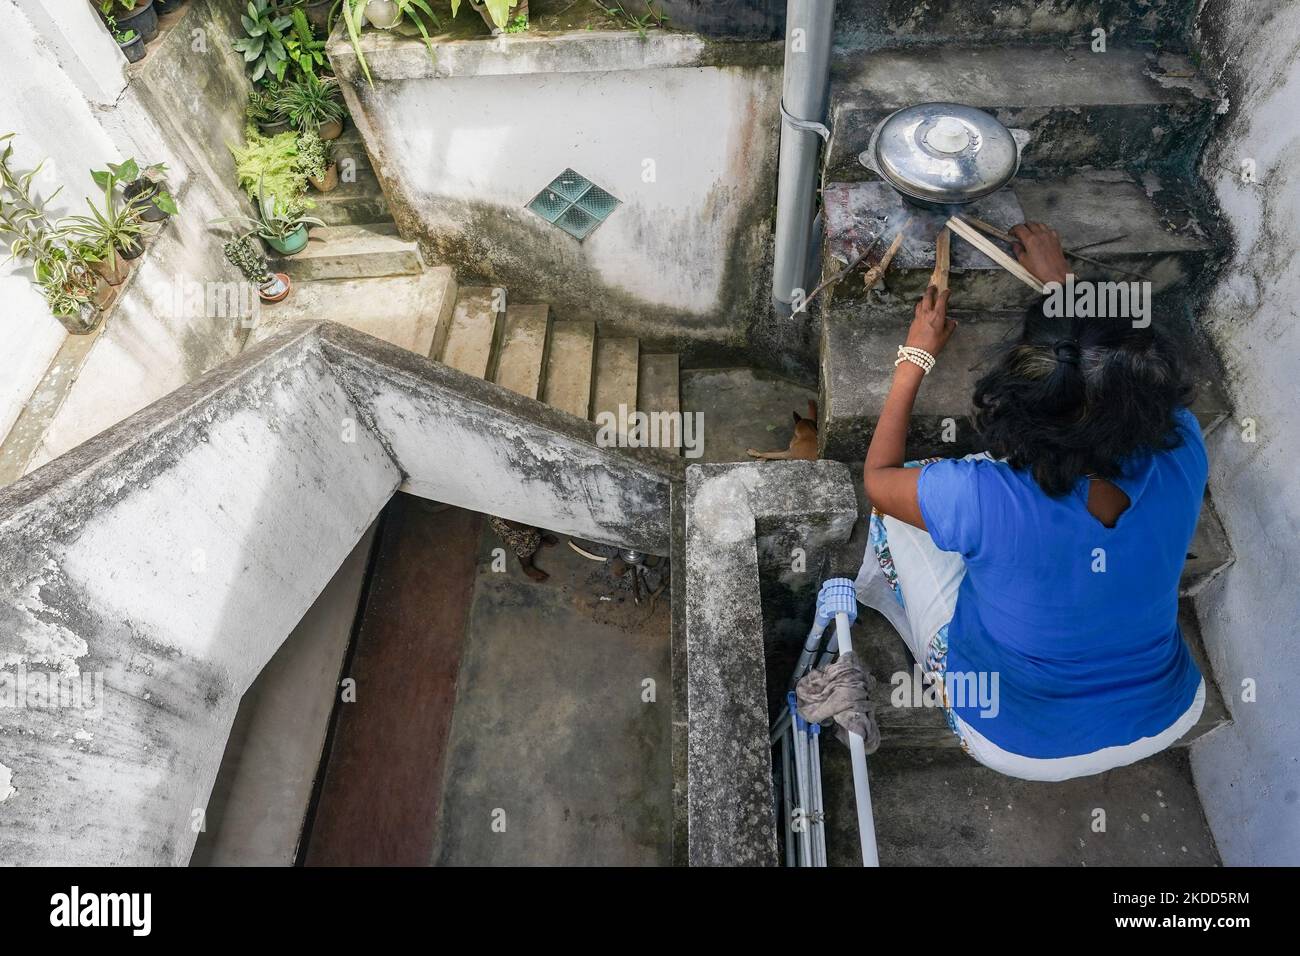 En raison de la grave crise du gaz au Sri Lanka, les personnes vivant dans des appartements dans les zones urbaines sont confrontées à beaucoup de problèmes. En raison du manque de gaz et de l'interdiction d'utiliser des poêles à bois dans les appartements, de nombreux propriétaires d'appartements ont recours à la cuisine extérieure. La photo montre deux femmes vivant dans un complexe de logements Colombo qui cuisent de la nourriture sur les escaliers. Sur 04 juillet 2022, à Colombo, Sri Lanka (photo de Thilina Kaluthotage/NurPhoto) Banque D'Images